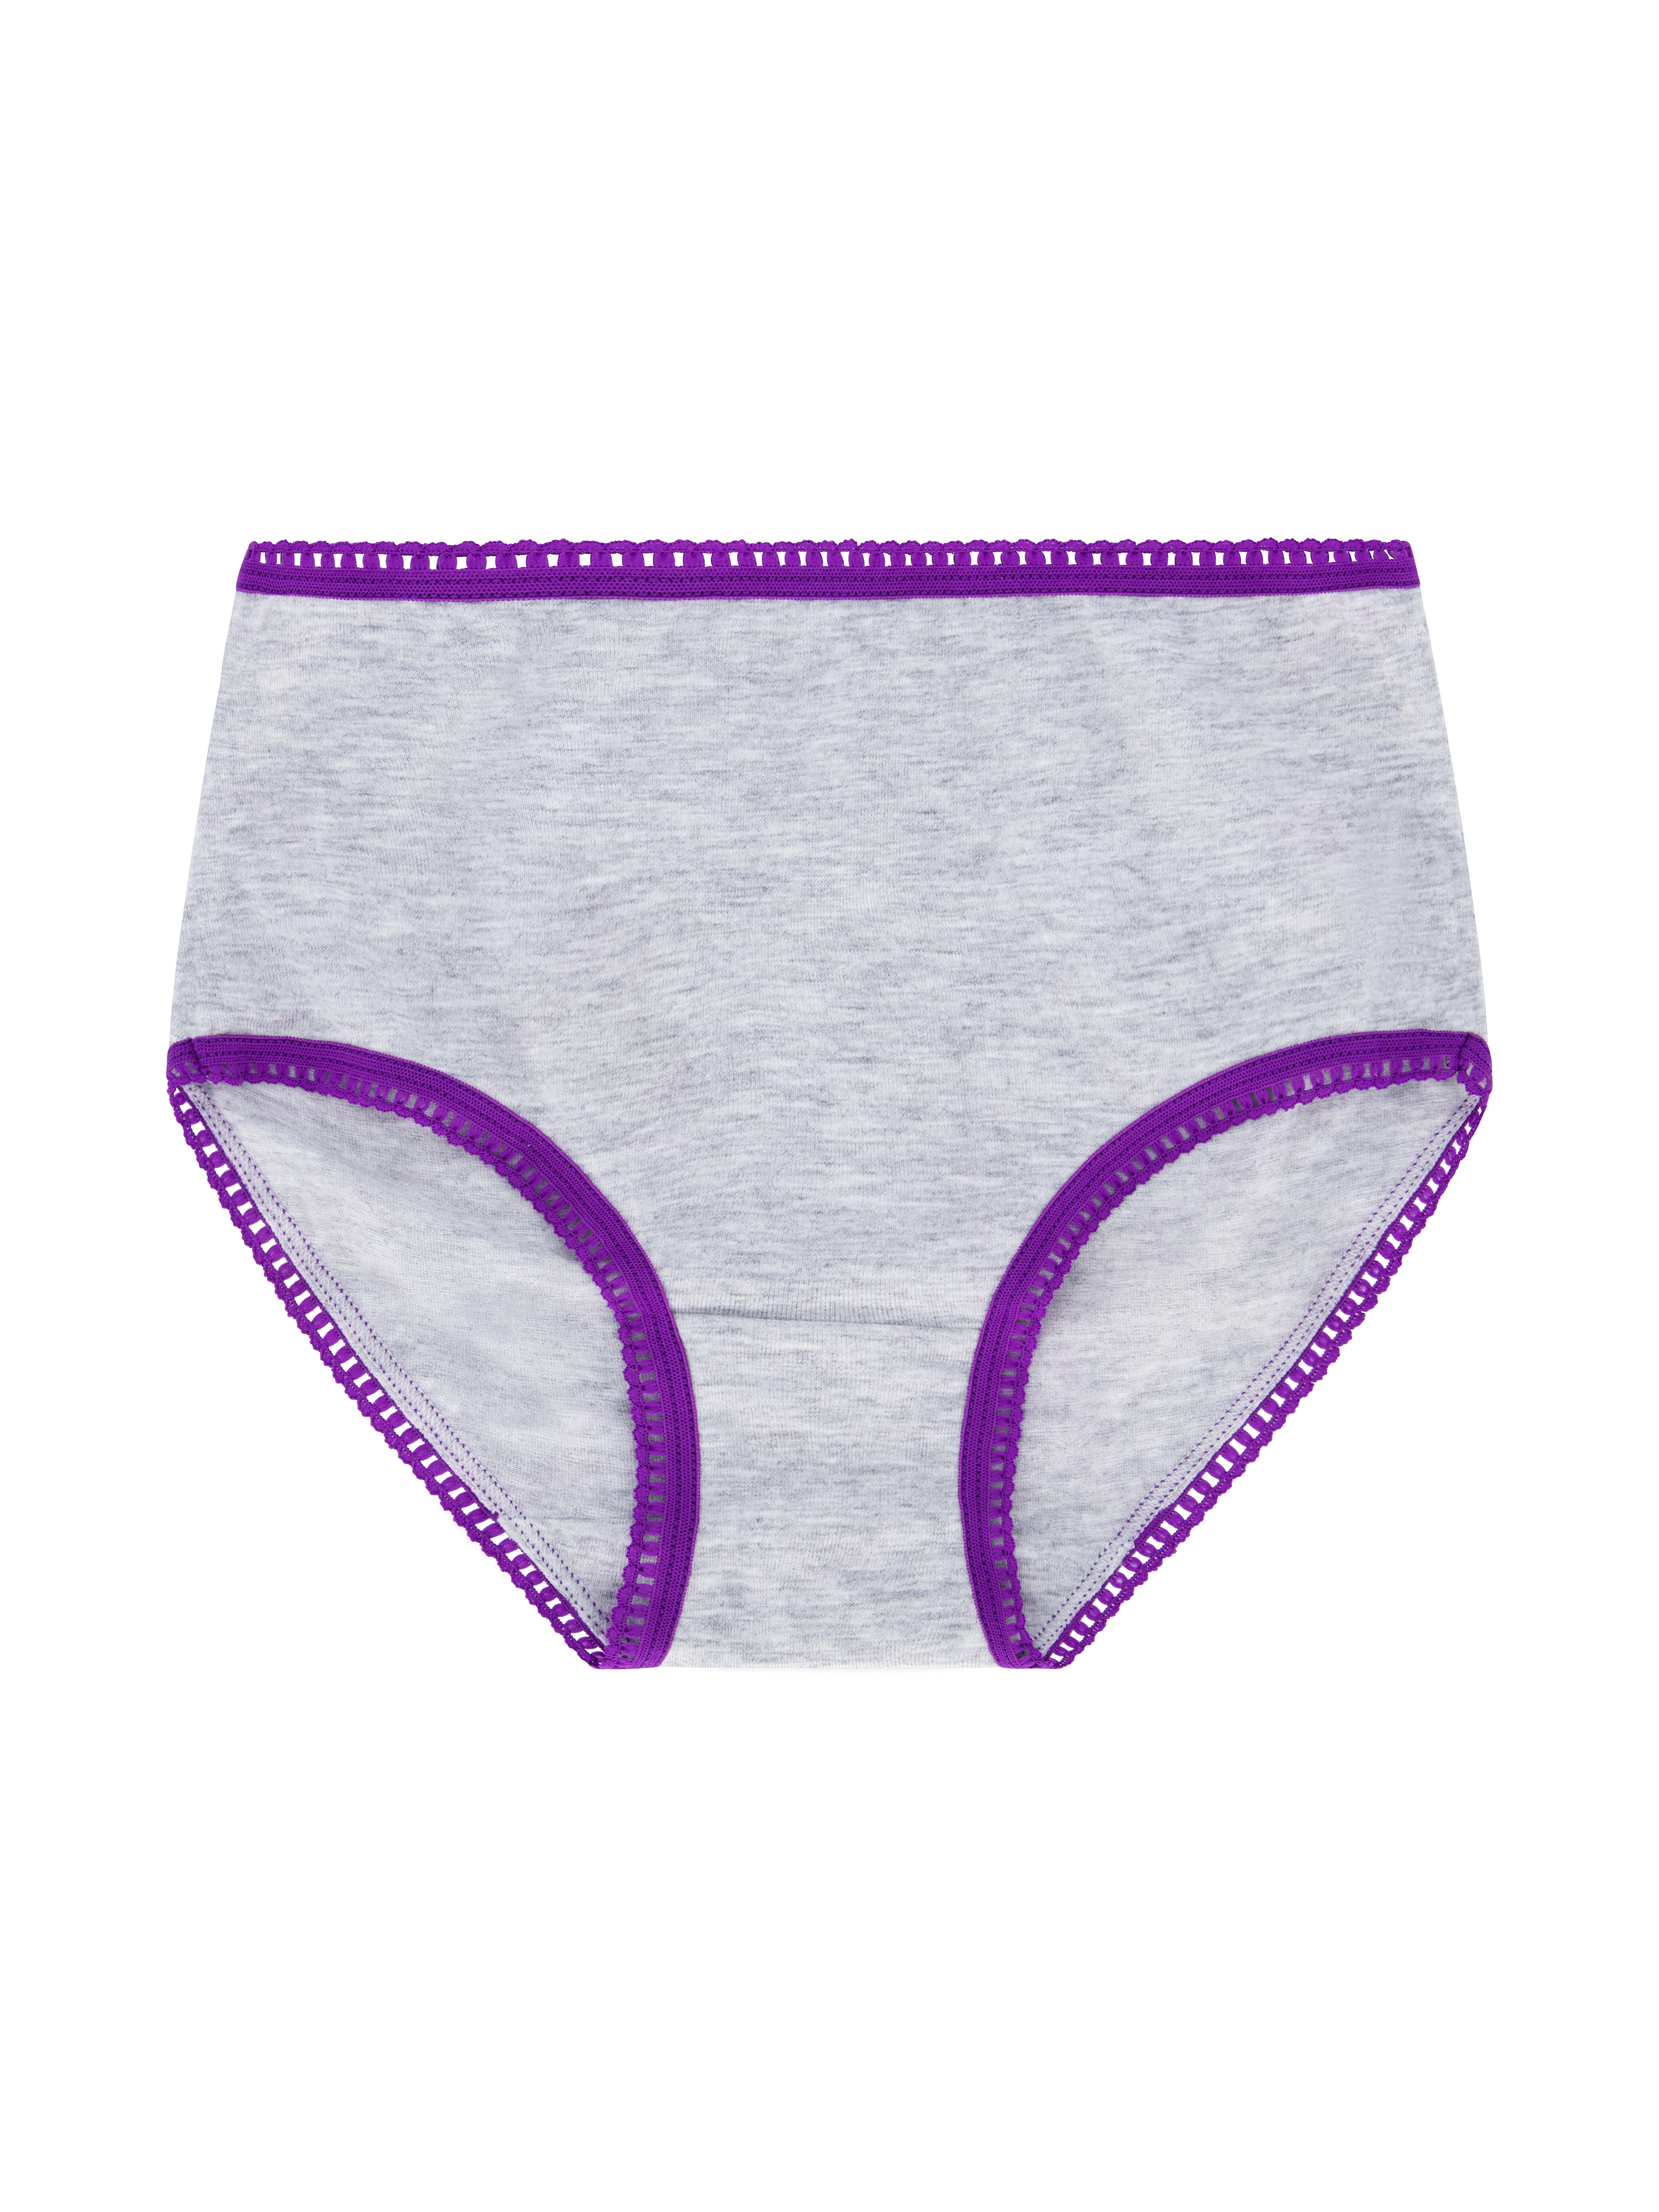 Wonder Nation Girls Brief Underwear 14-Pack, Sizes 4-18 - image 11 of 17